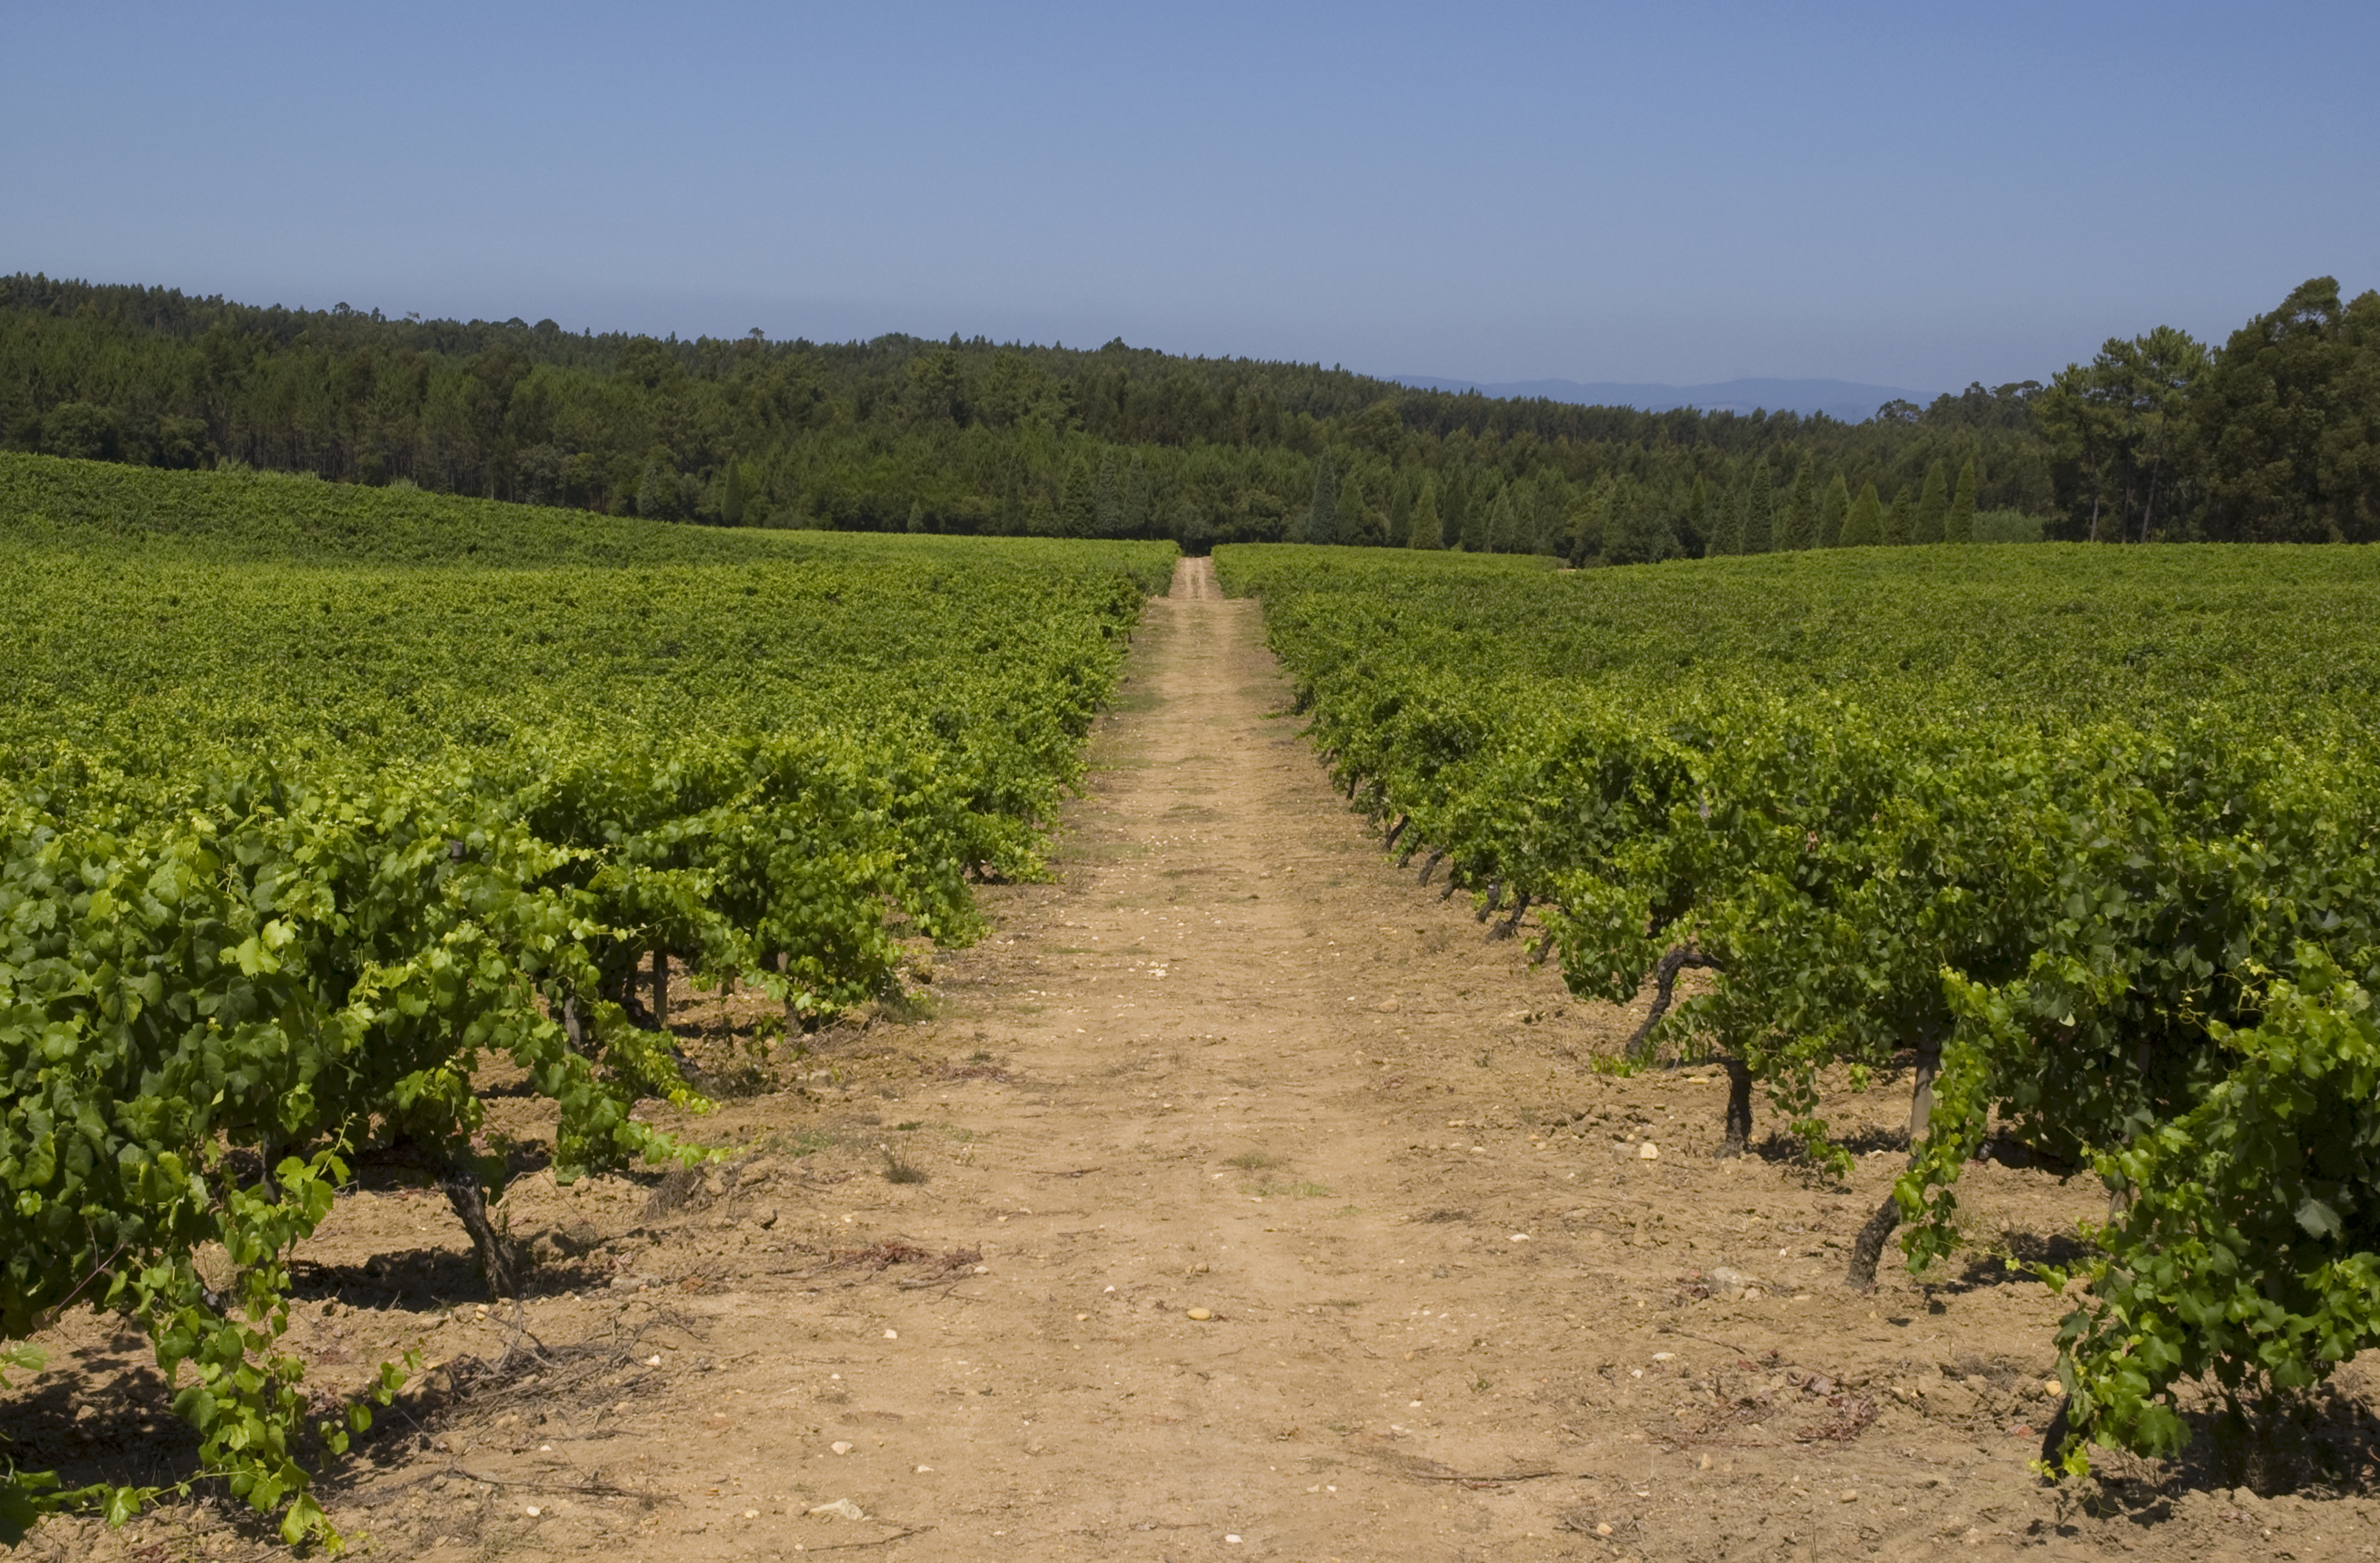 Vineyard growing in Portugal